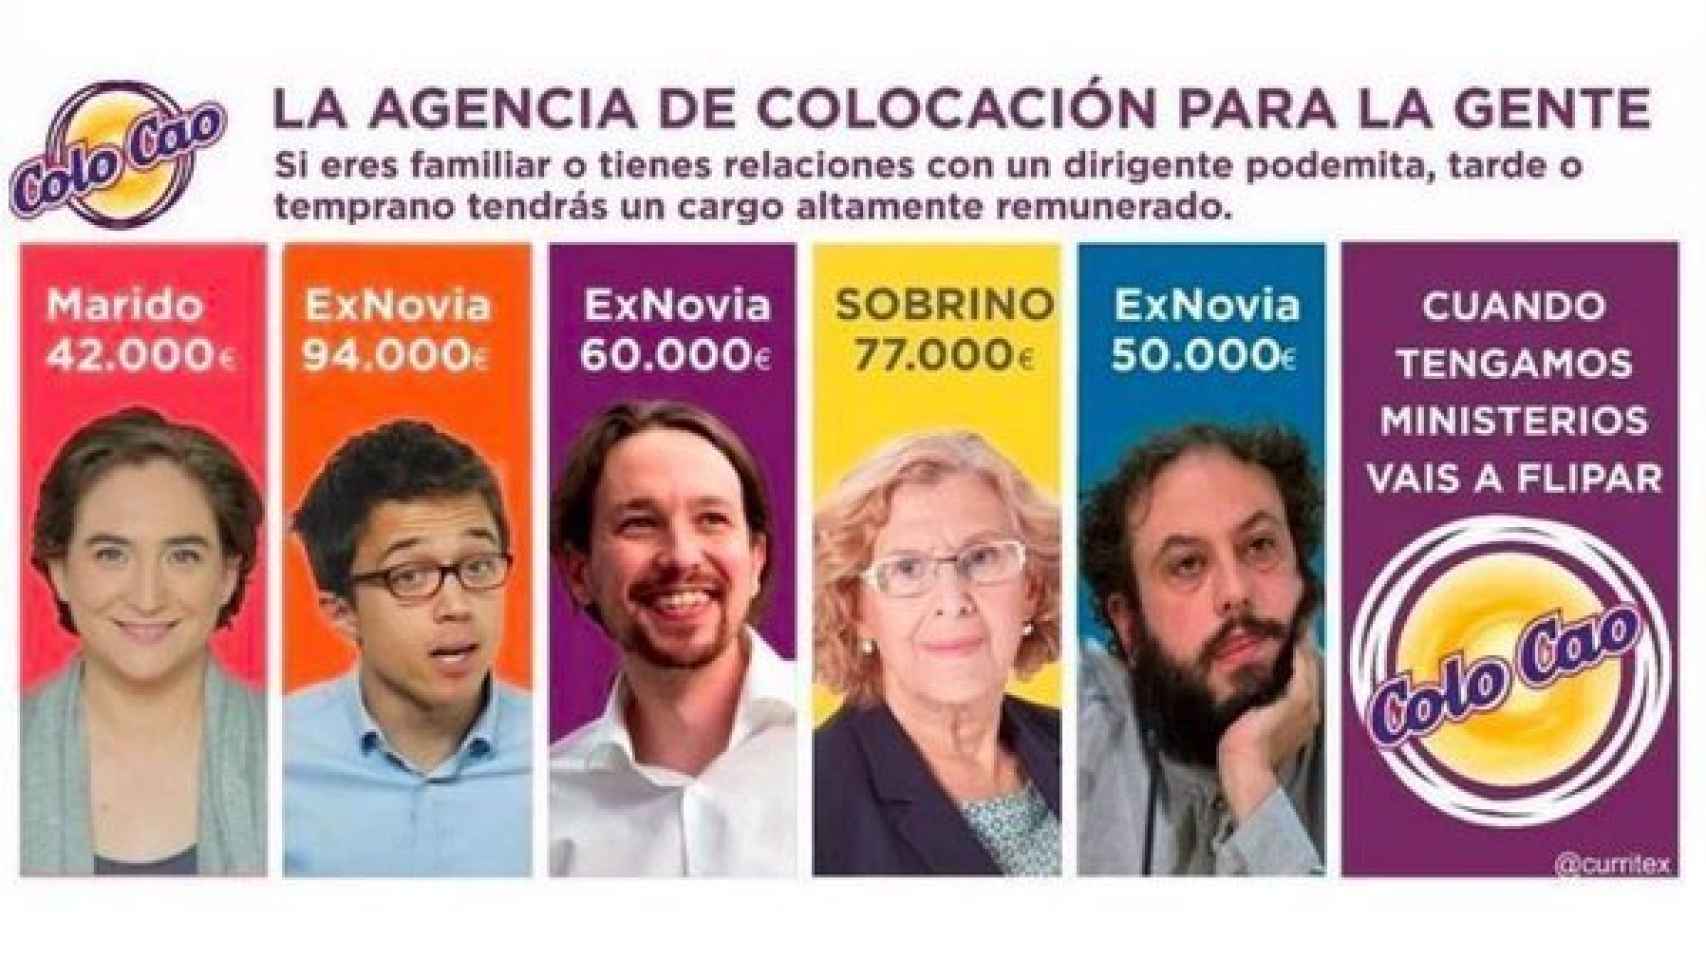 La agencia del colo-cao, tuiteada por Ignacio Aguado.